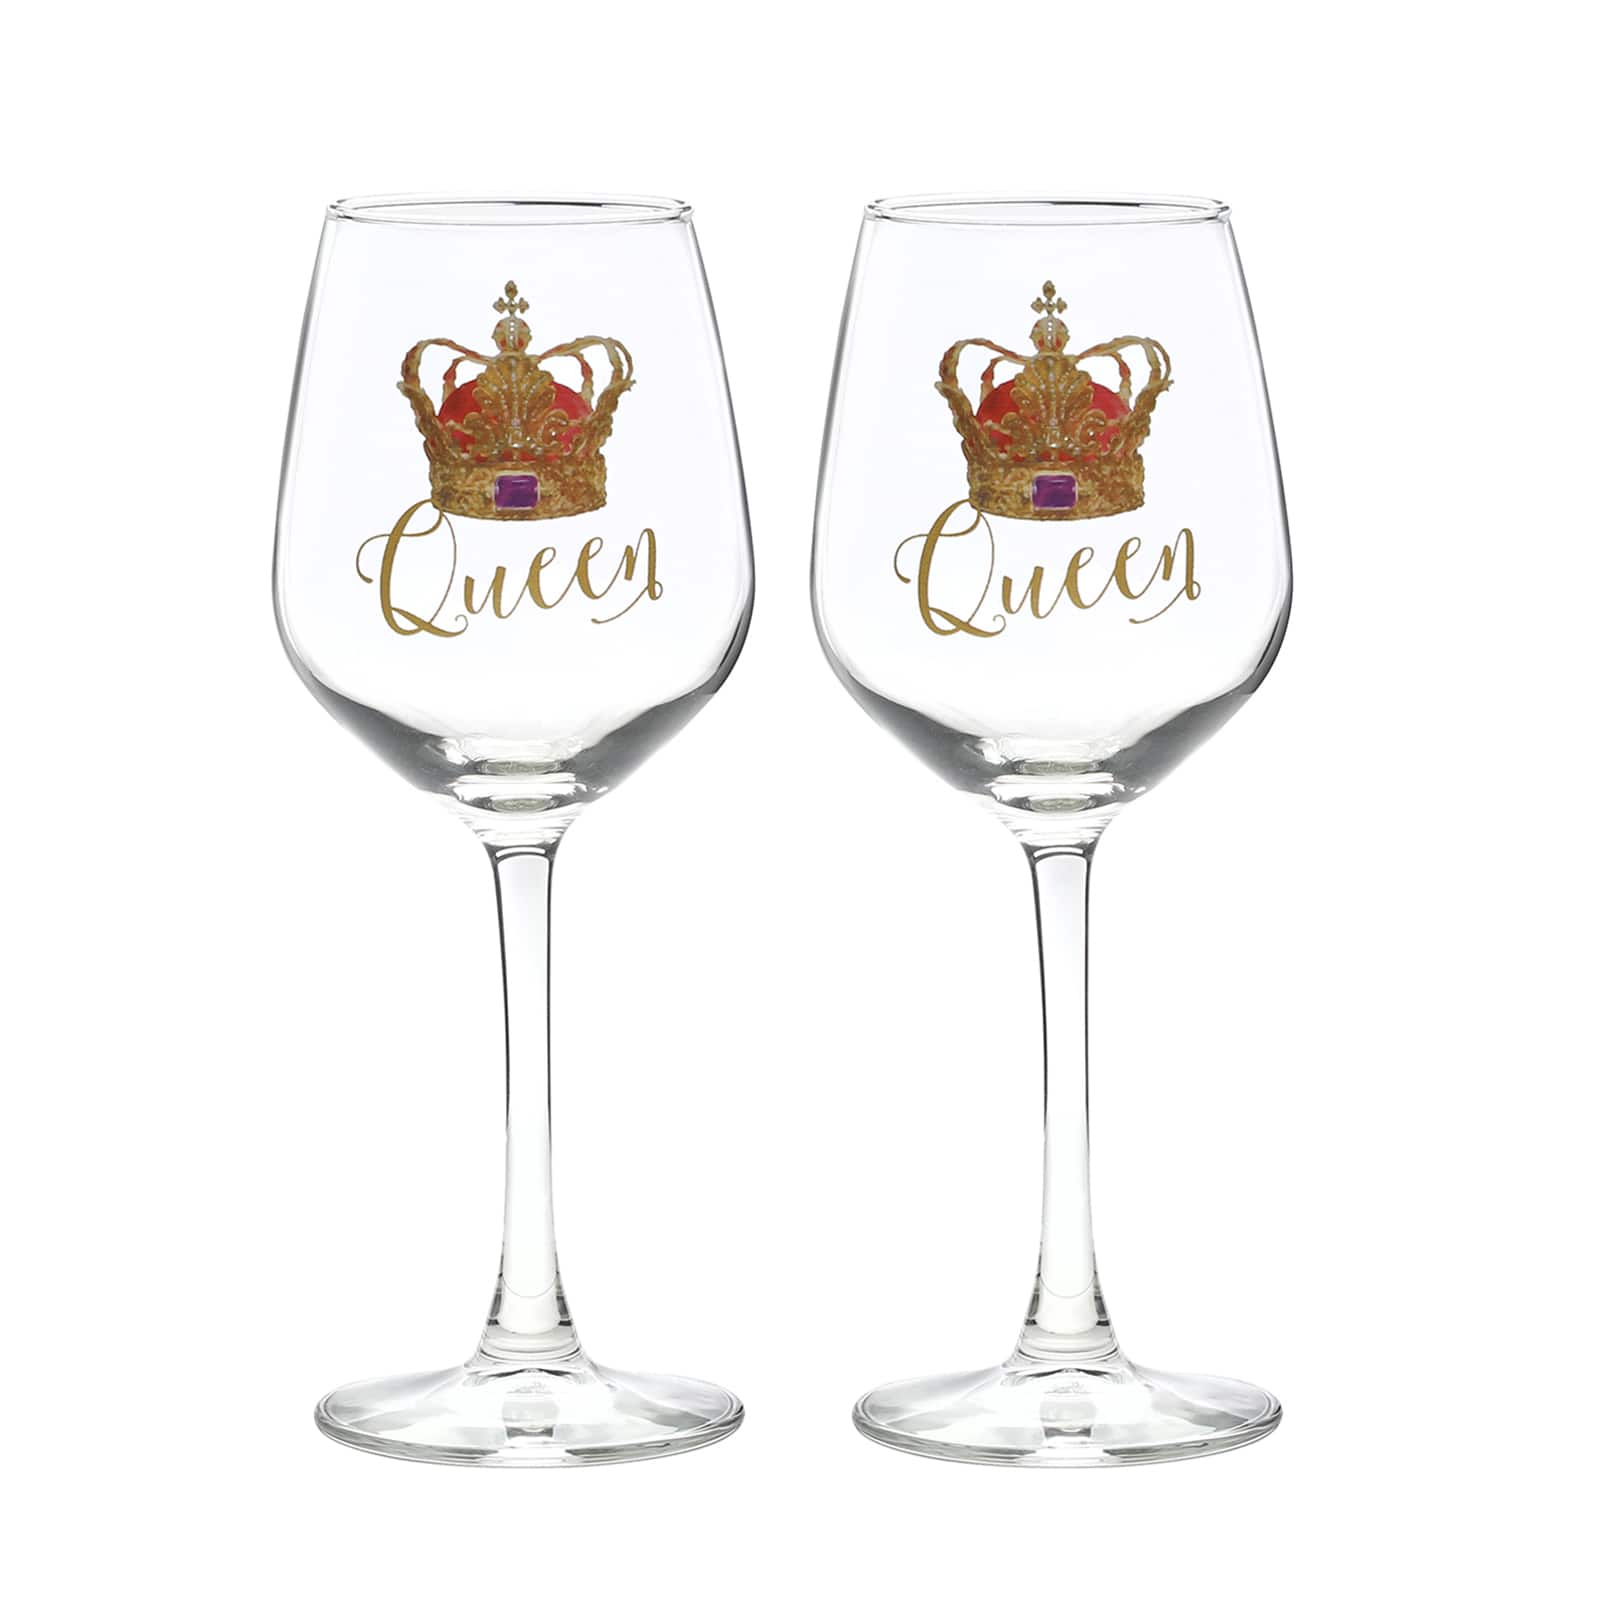 12oz. Queen &#x26; Queen Wine Glass Set